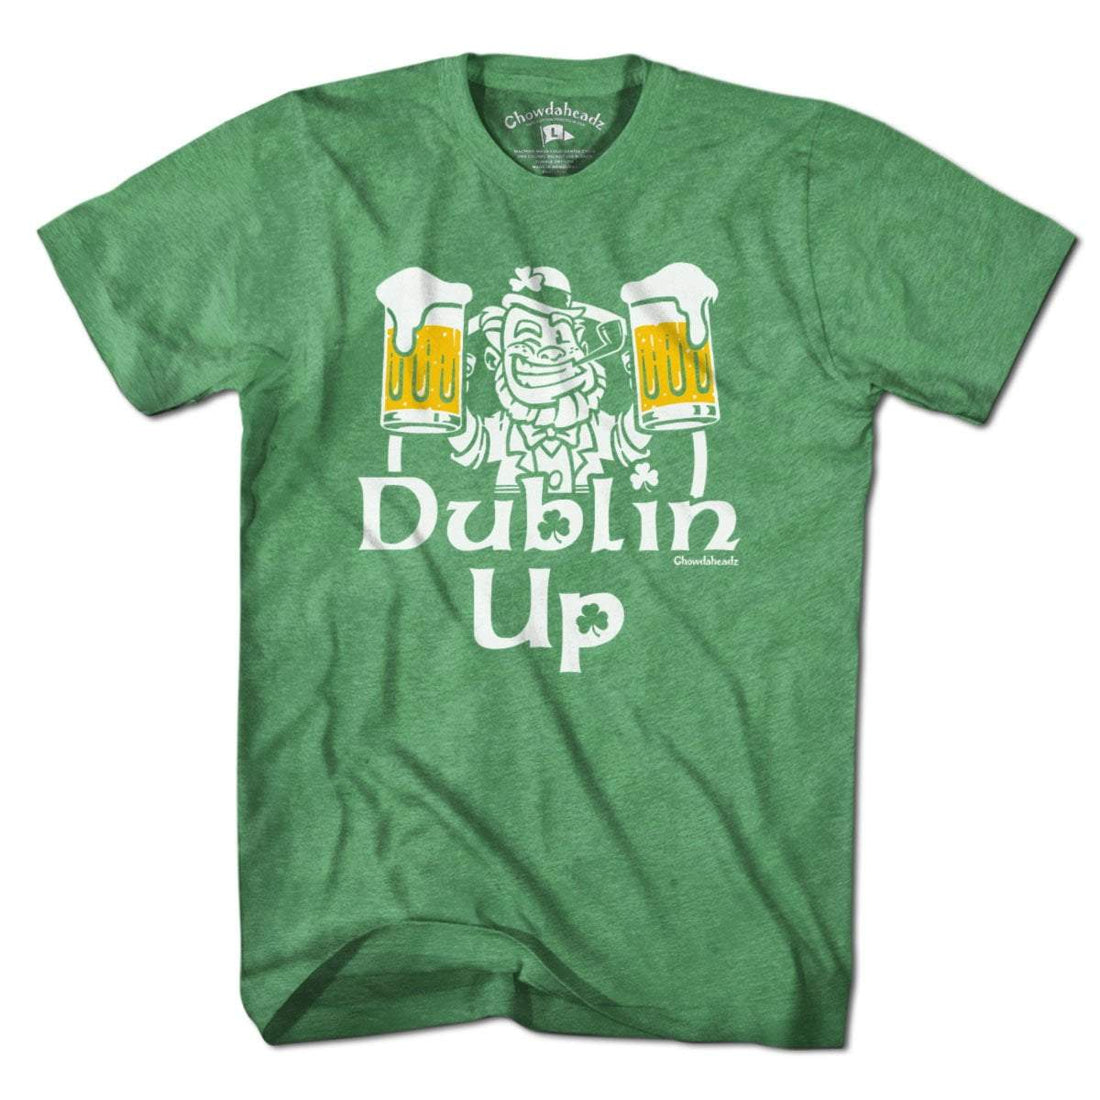 Dublin Up T-Shirt - Chowdaheadz